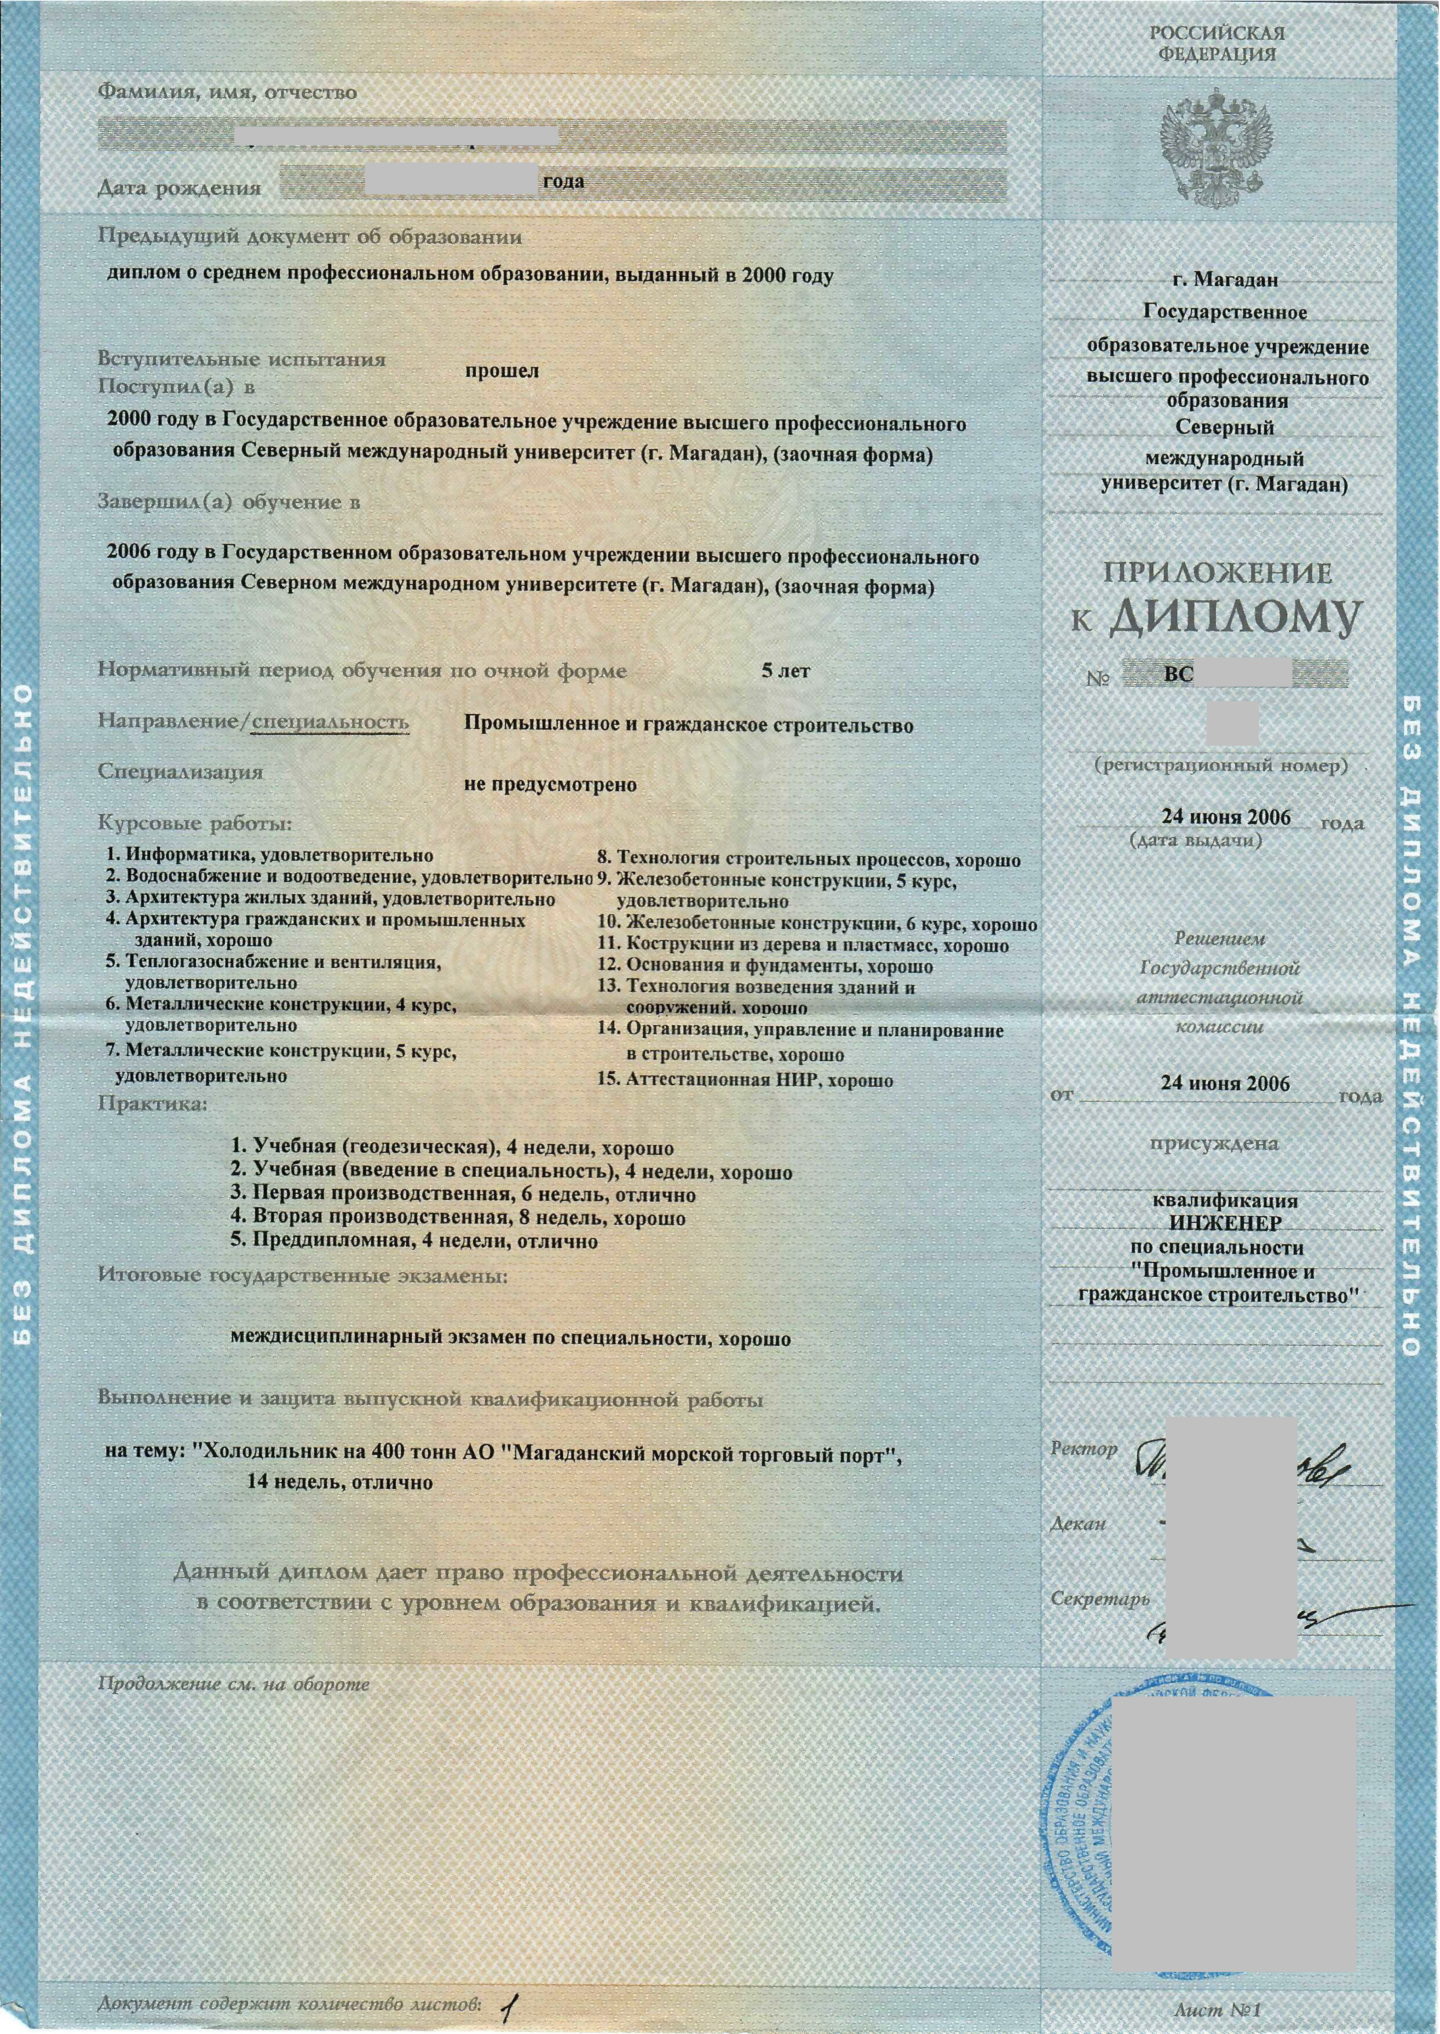 Северный международный университет (г. Магадан) ПГС, приложение диплома о высшем образовании 2006 года